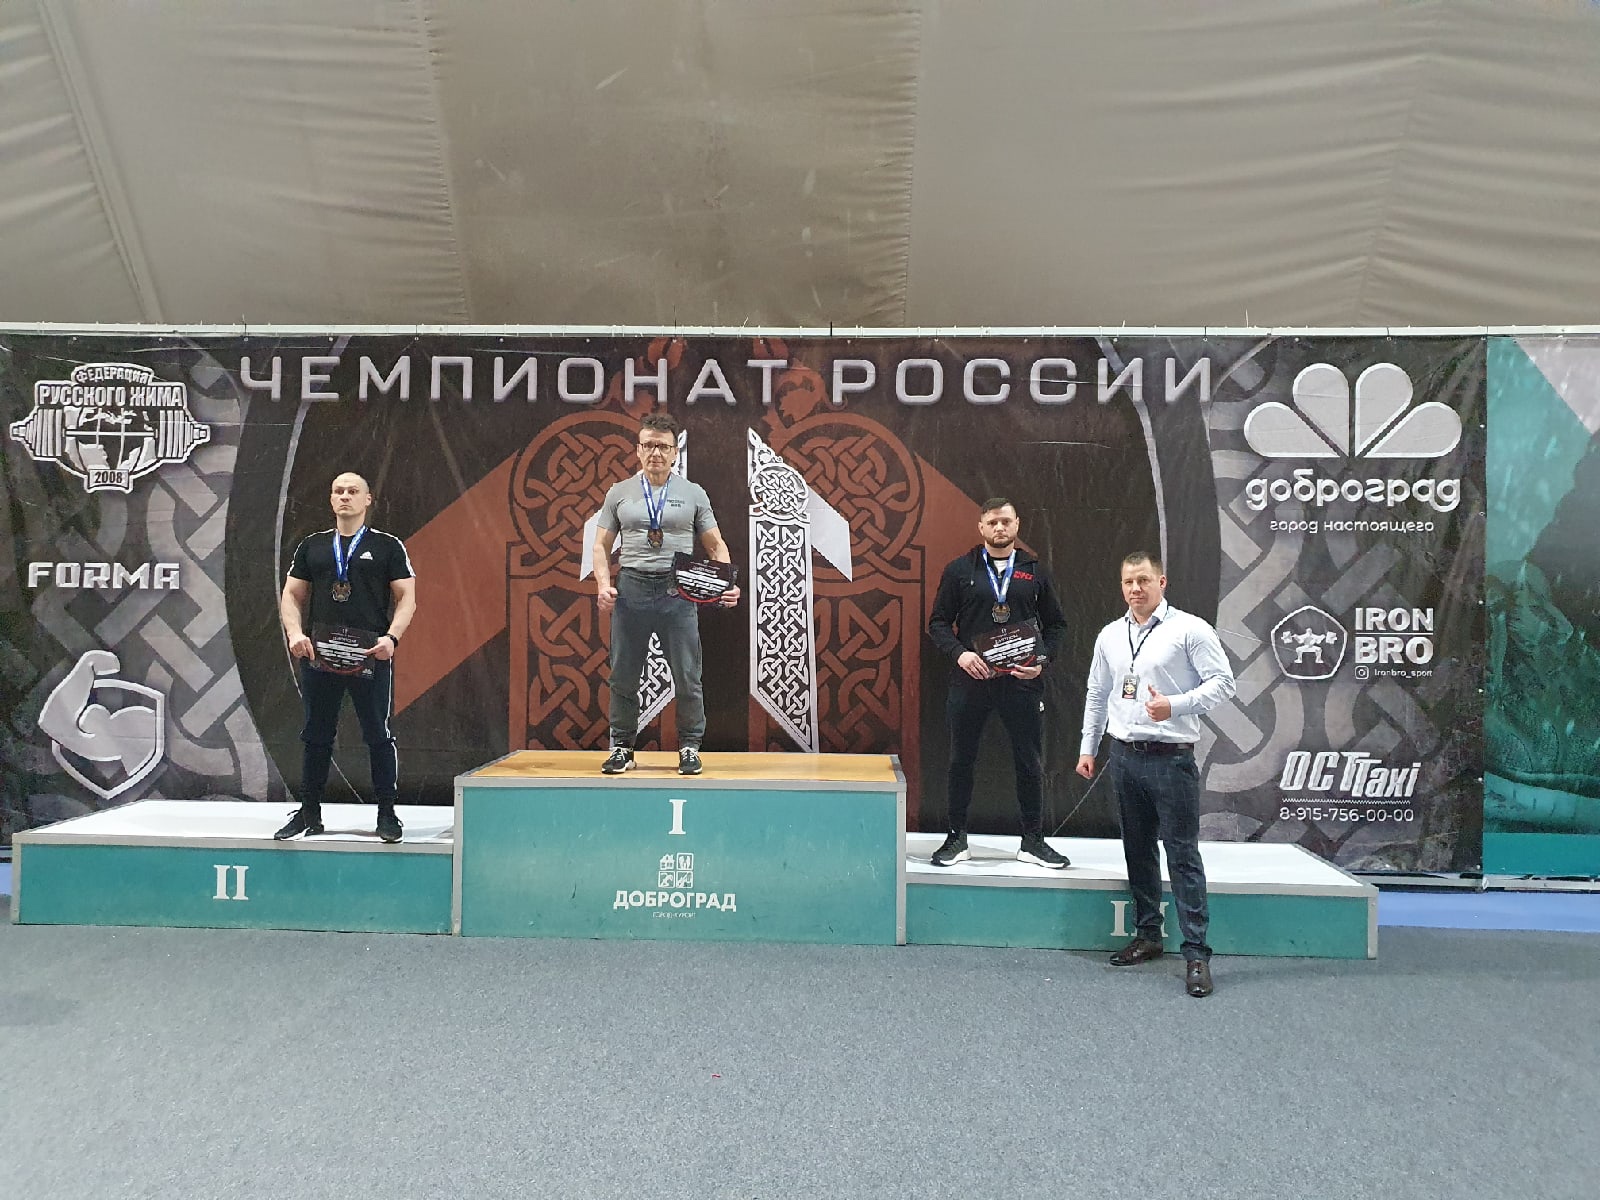 На минувших выходных в Коврове состоялся XI чемпионат России по русскому жиму, на который съехалось более 400 спортсменов со всей страны. Владимирцы проявили себя более чем достойно, кроме того, установили несколько рекордов.